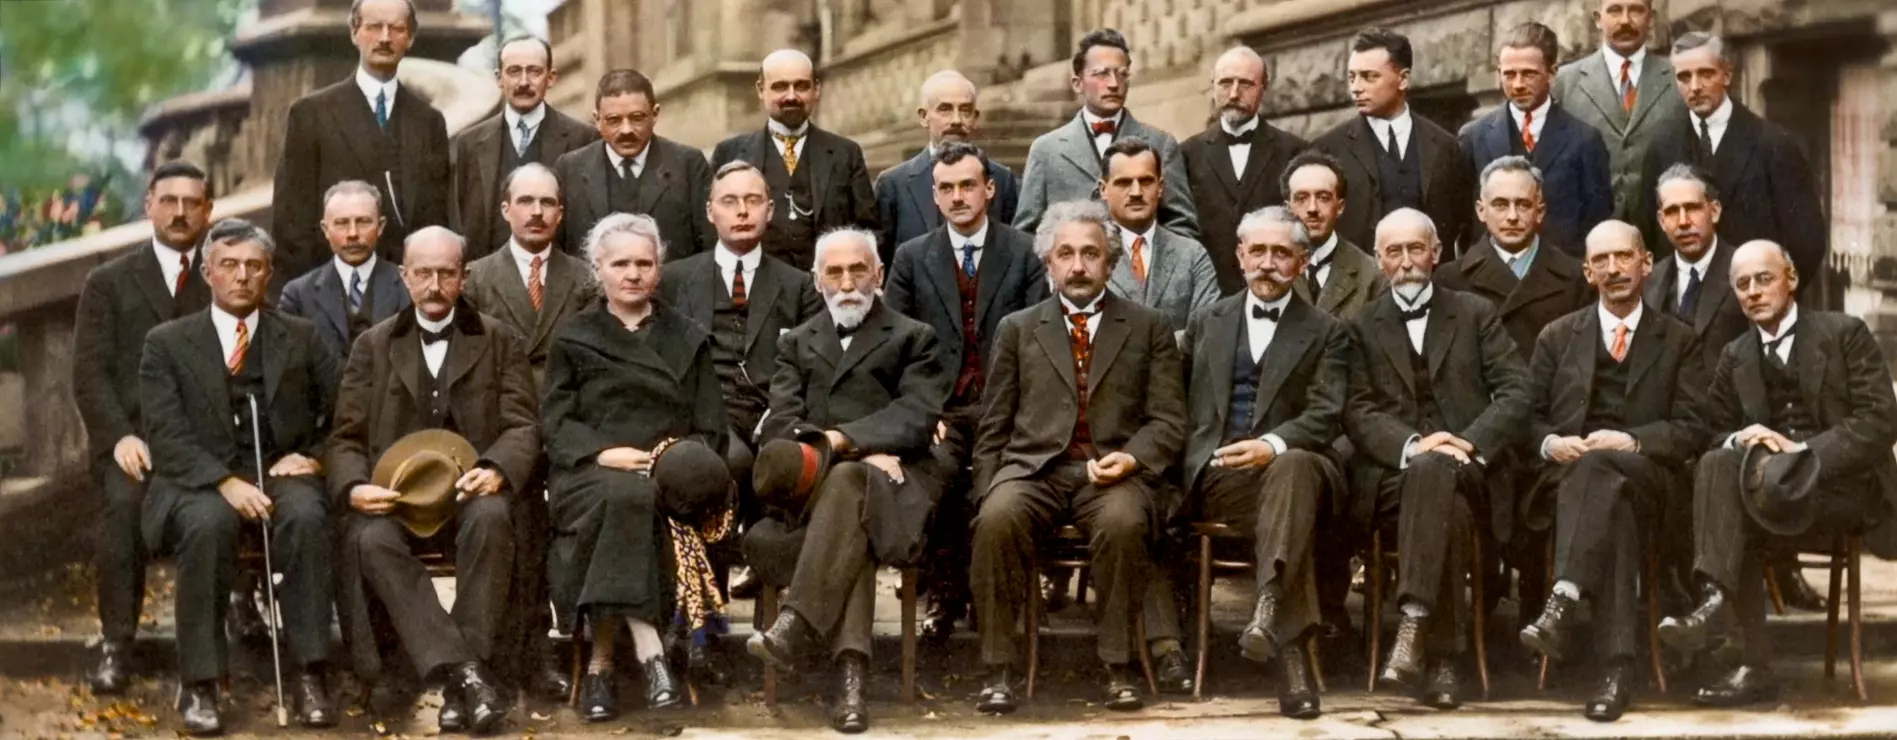 Asistentes a la conferencia Solvay de 1927